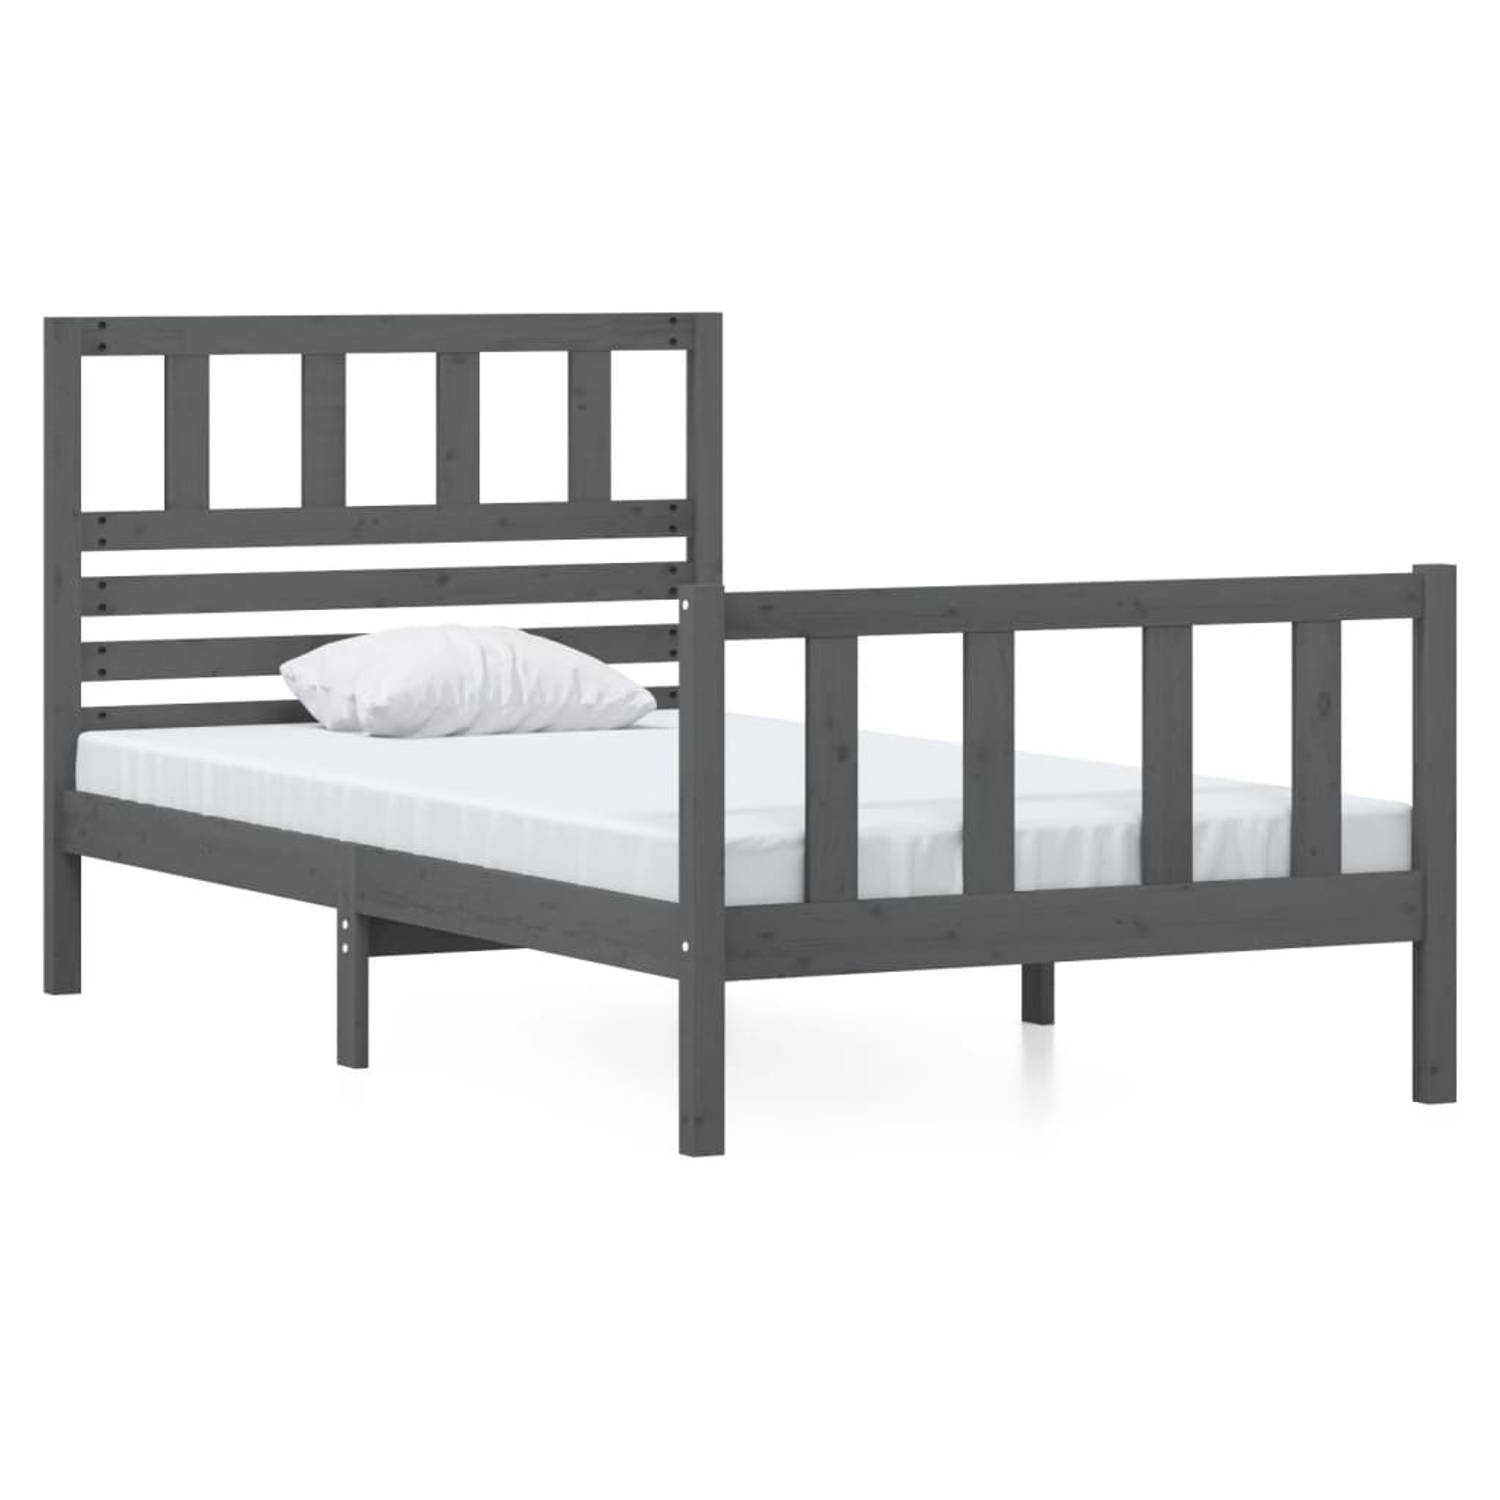 The Living Store Bedframe massief hout grijs 90x190 cm 3FT single - Bedframe - Bedframes - Eenpersoonsbed - Bed - Bedombouw - Frame - Bed Frame - Ledikant - Bedframe Met Hoofdeinde